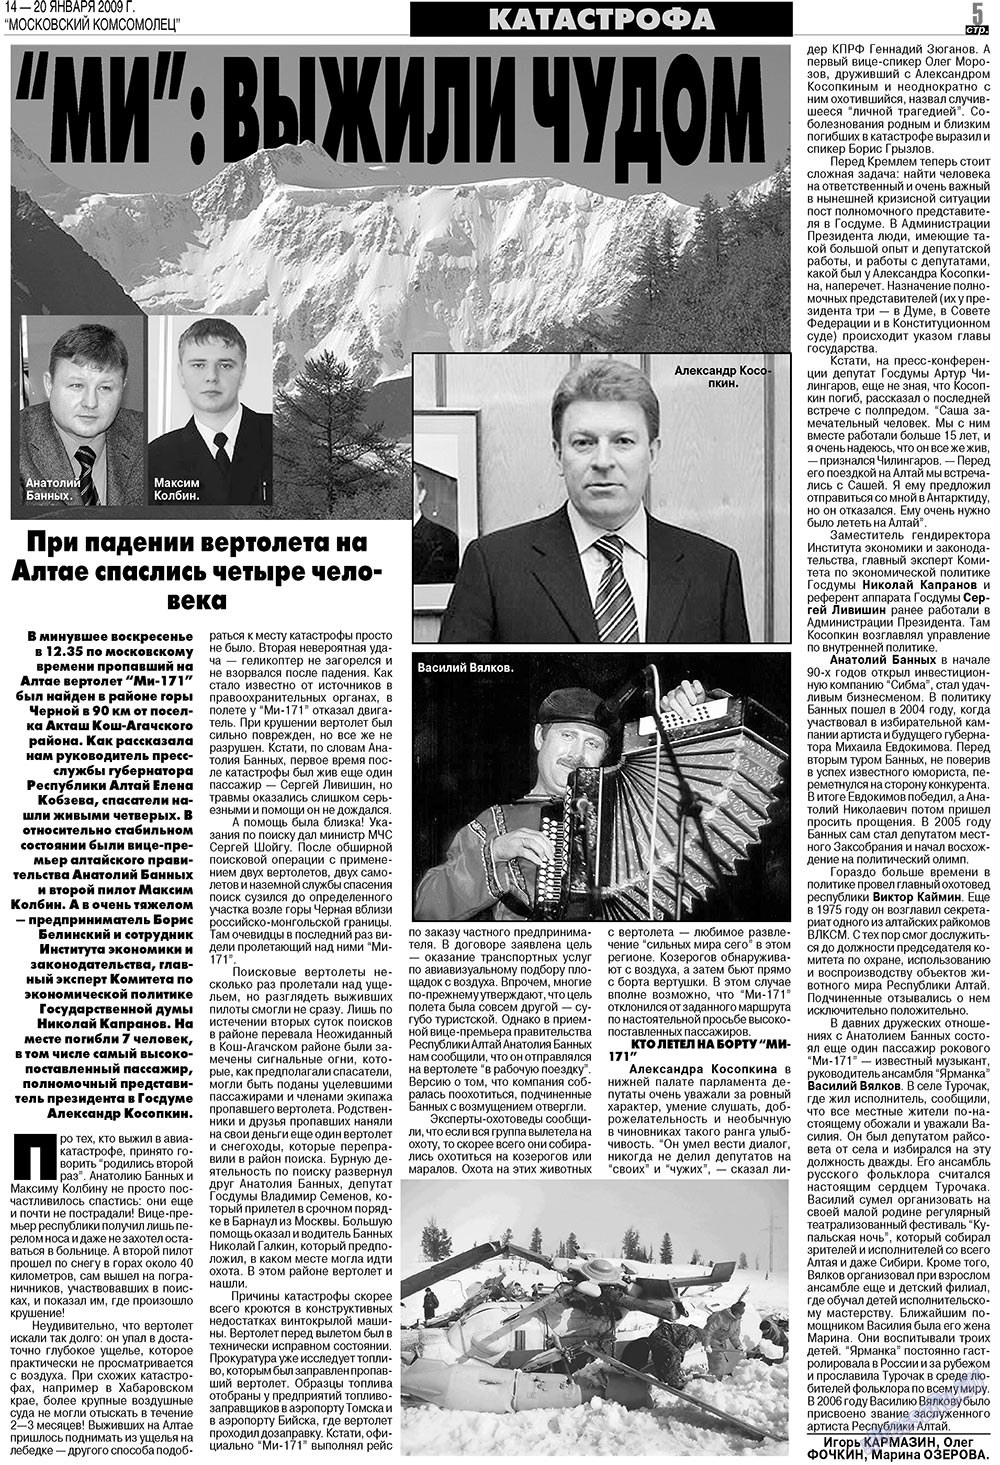 МК Испания, газета. 2009 №3 стр.5